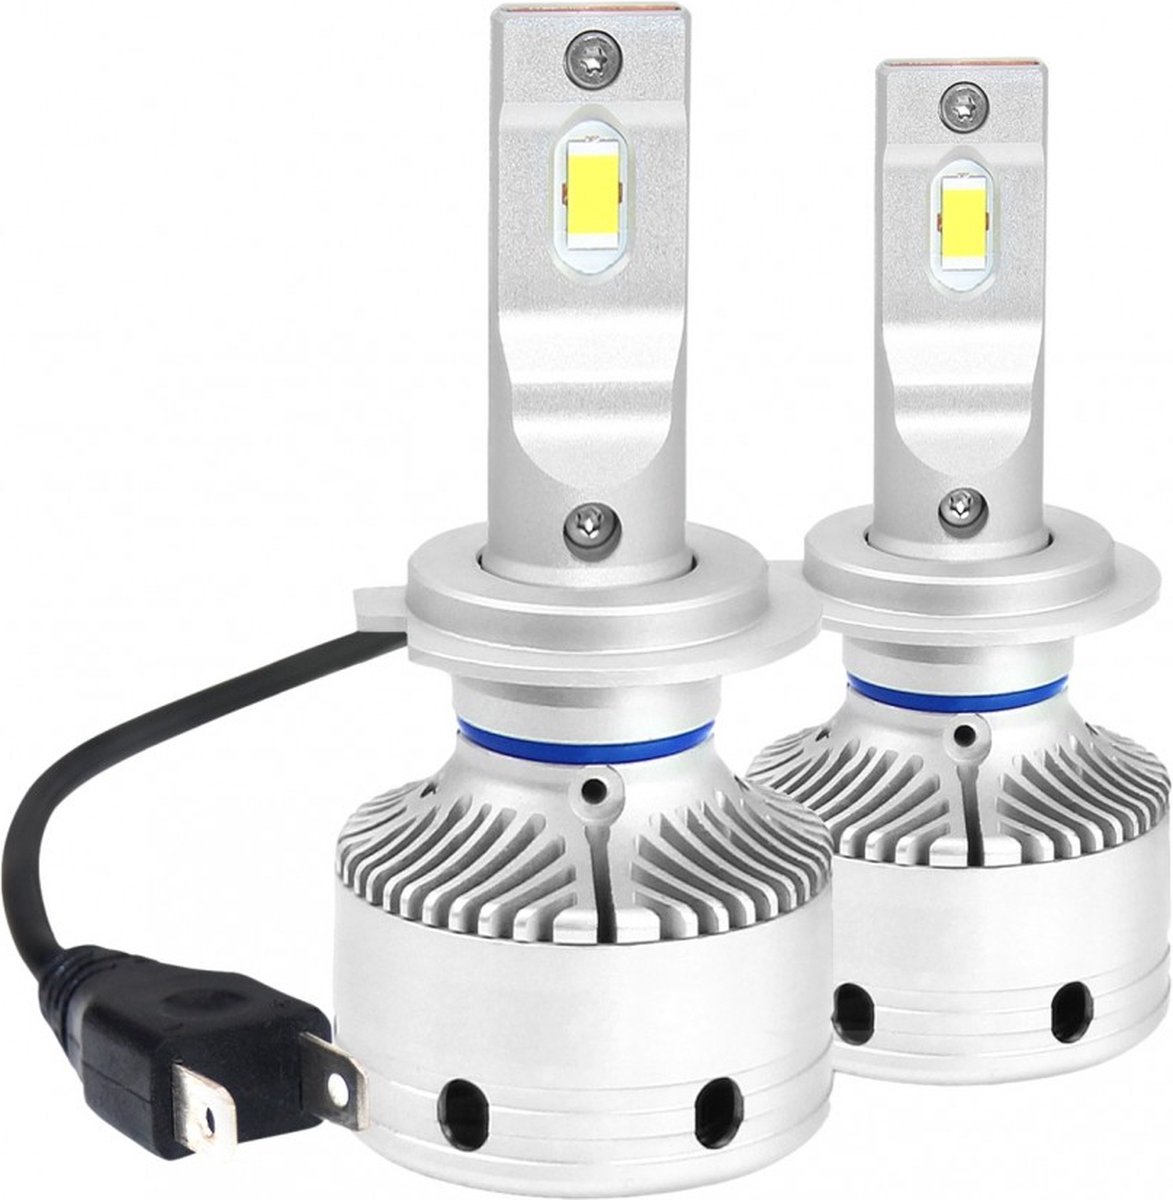 H7 koplamp set | 2x 2-SMD LED daglichtwit 6000K - 12000 Lm/stuk | CAN-BUS 12V - 24V DC